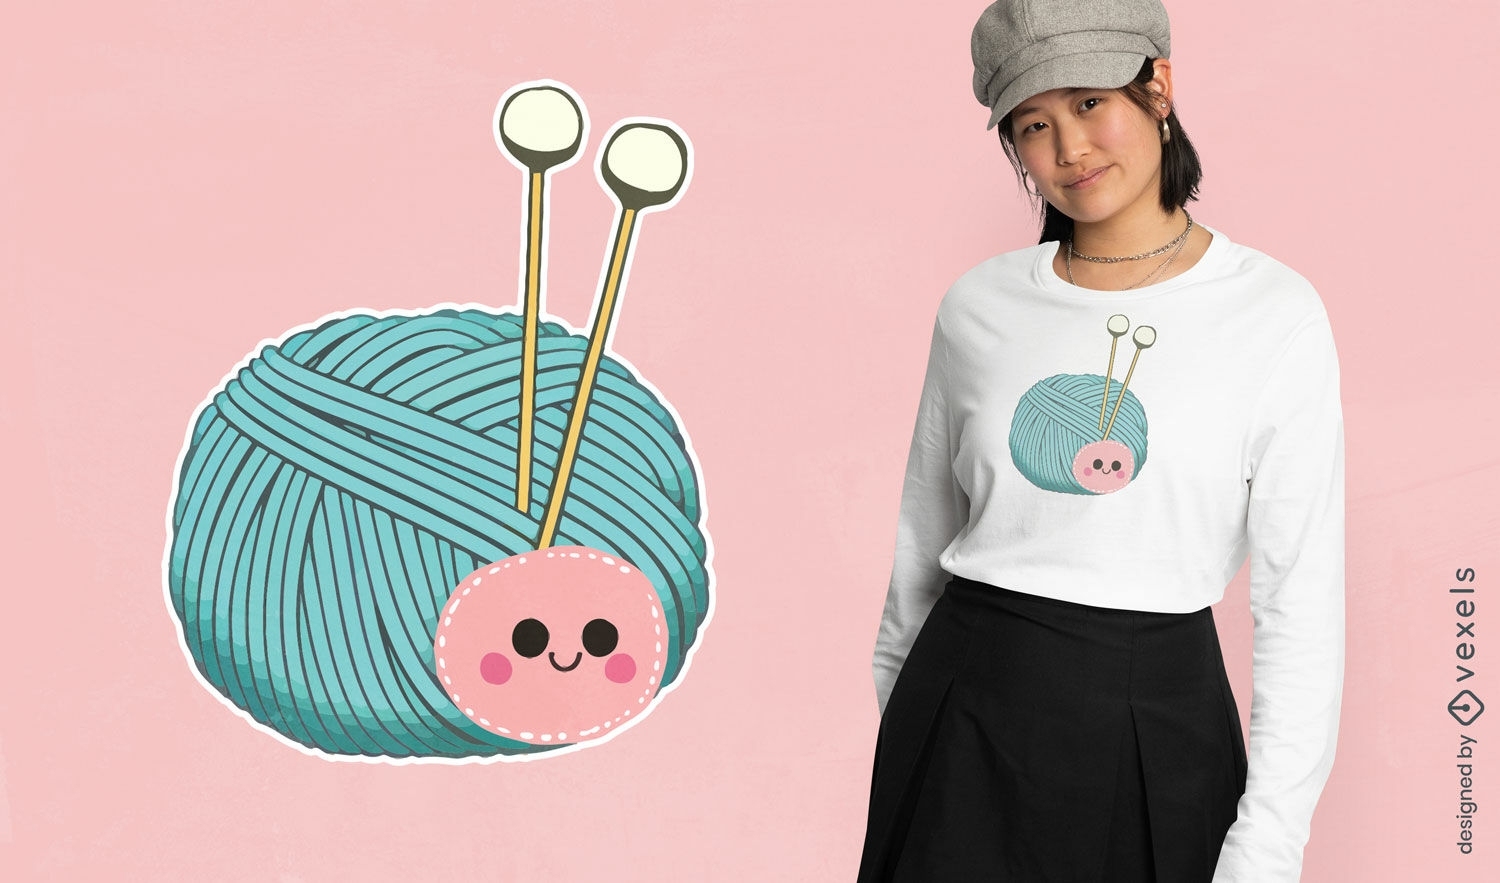 Cute yarn ball t-shirt design